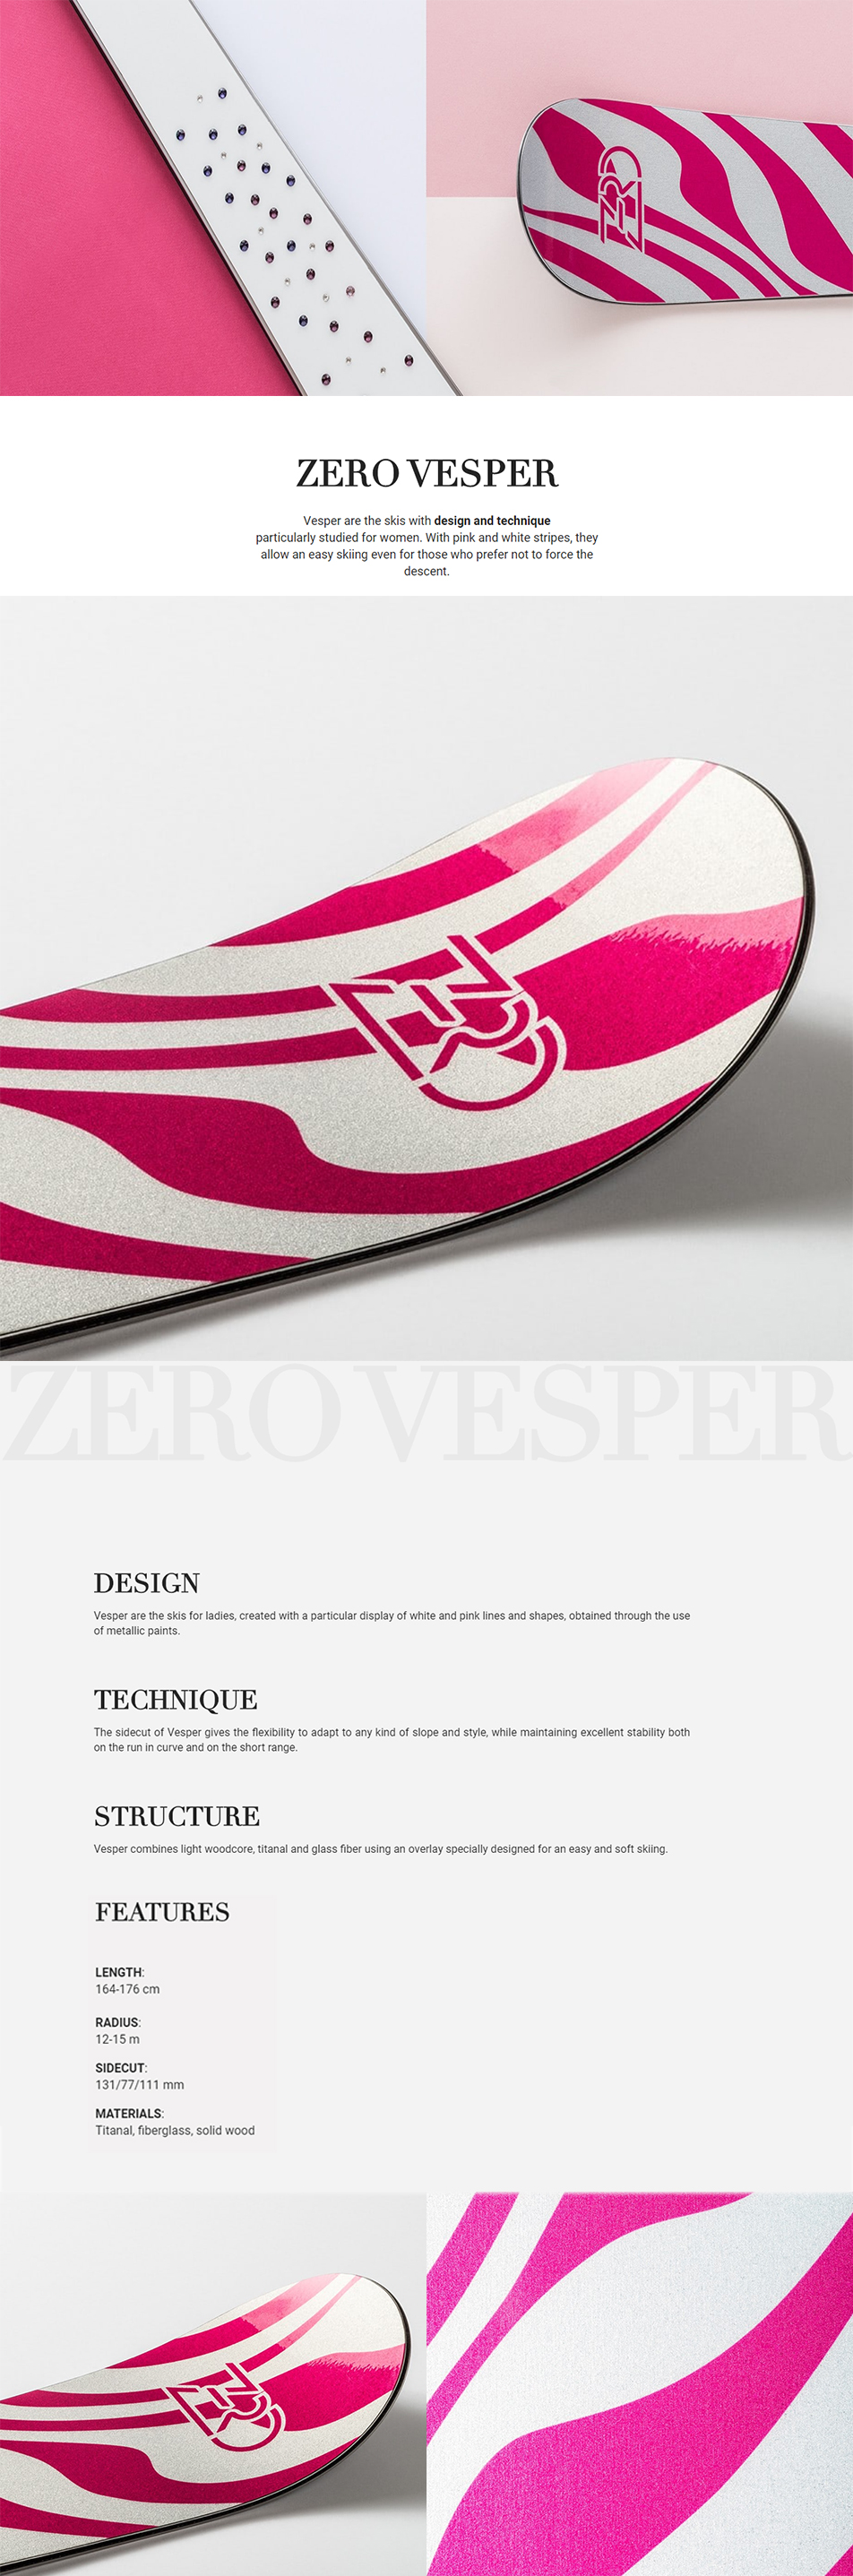 ZERO-VESPER-D1_172625.jpg